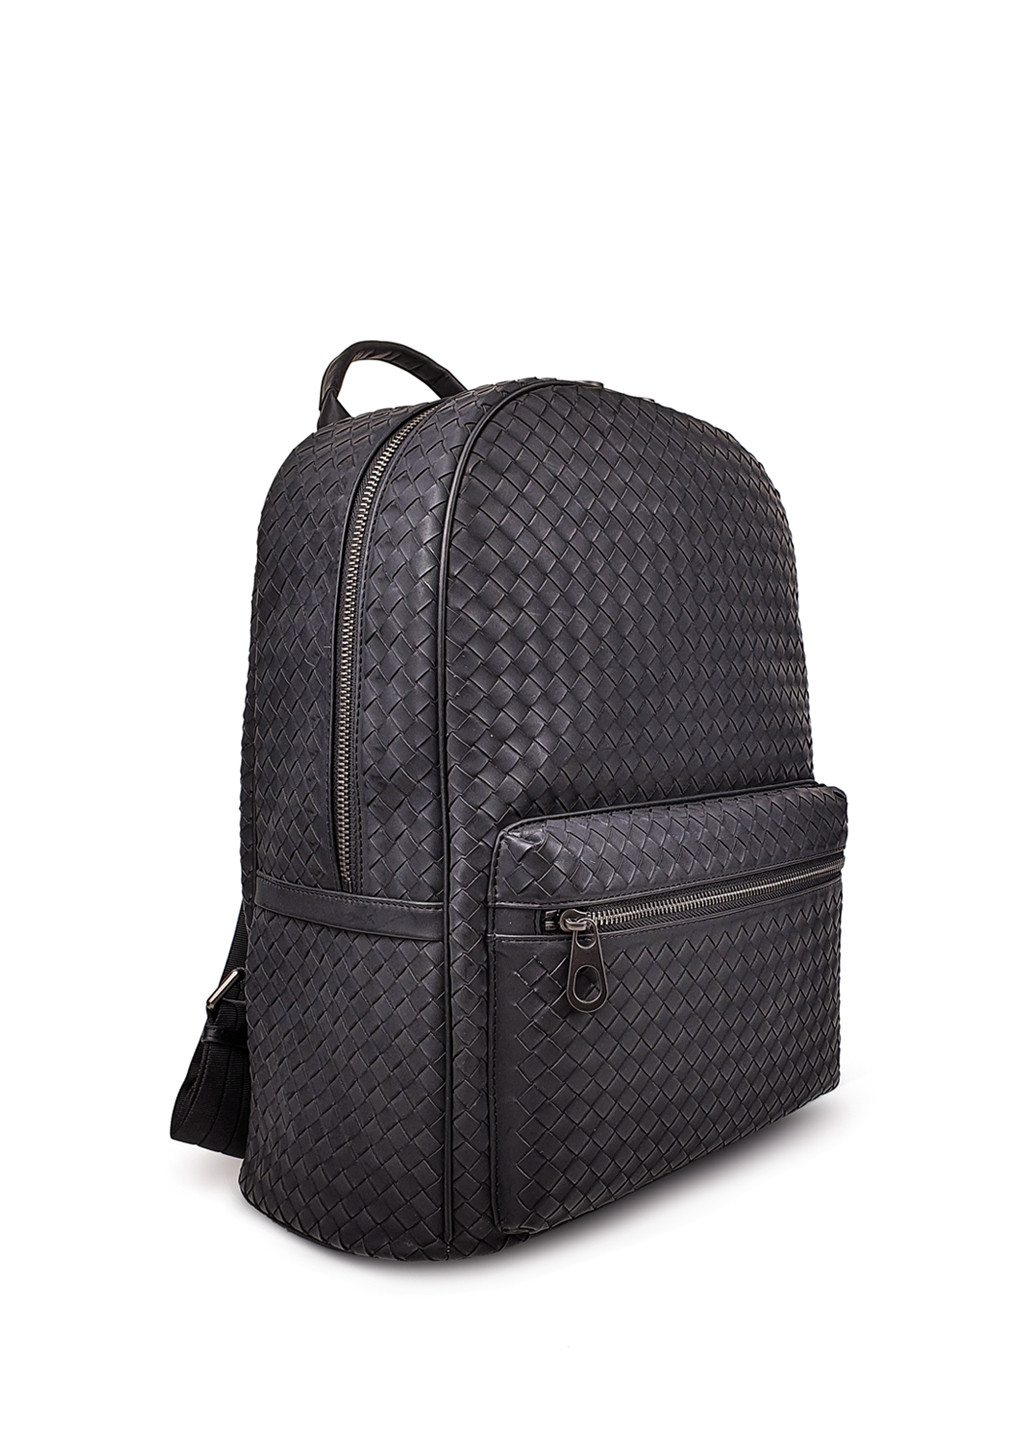 Модний чоловічий шкіряний рюкзак темно-сірого кольору Fashion рюкзак (251825960)